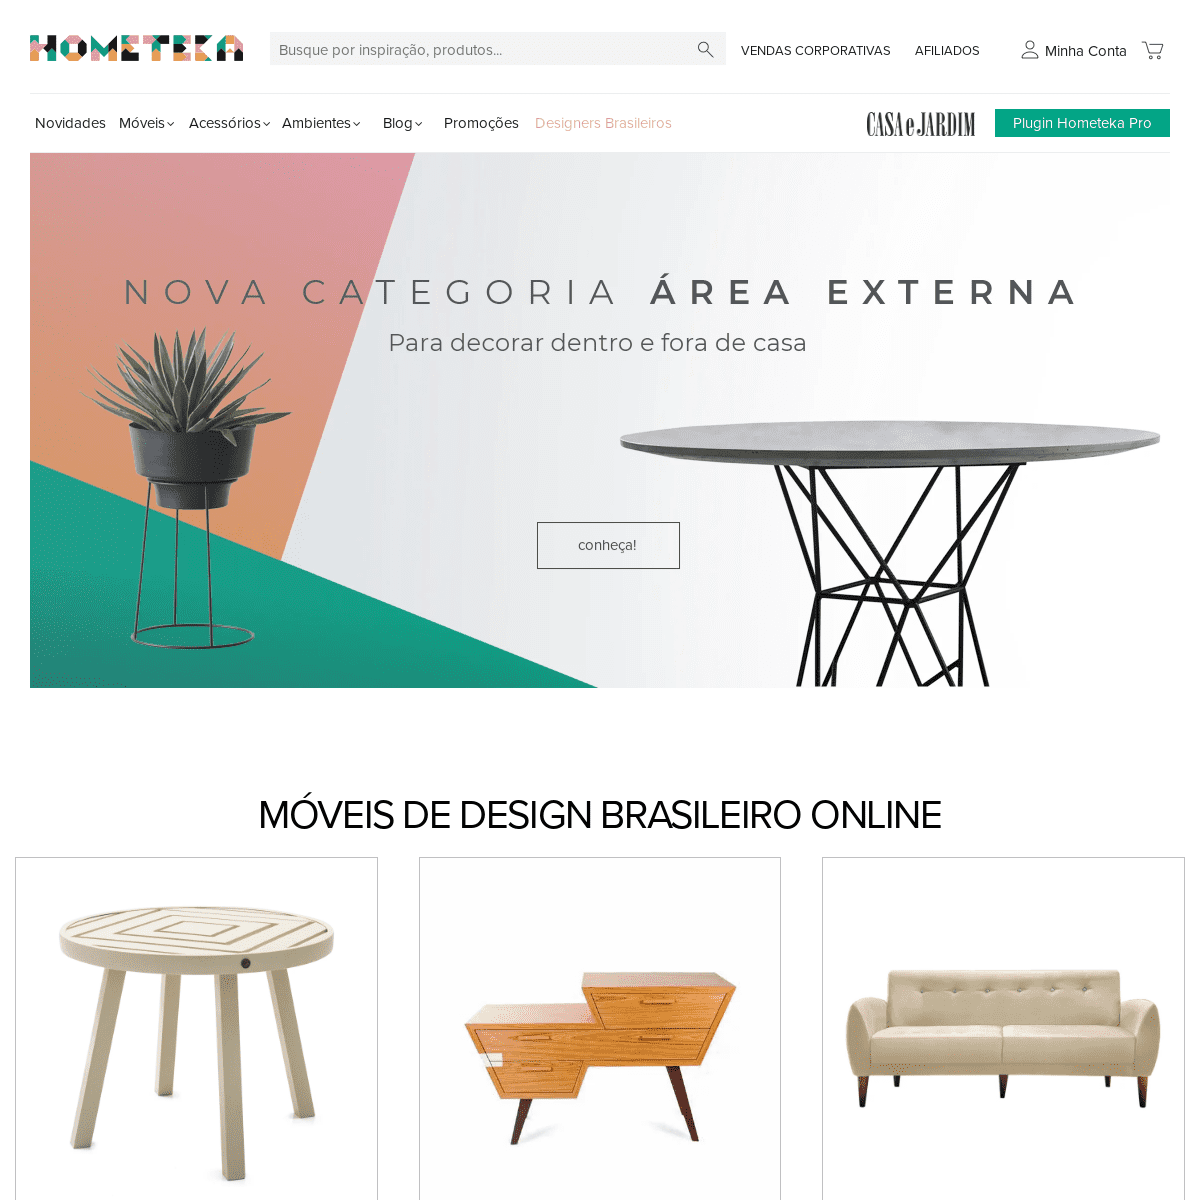 Hometeka - Decoração e móveis de design brasileiro online. Design cool e descolado em sofás, mesas, luminárias e cadeiras para s